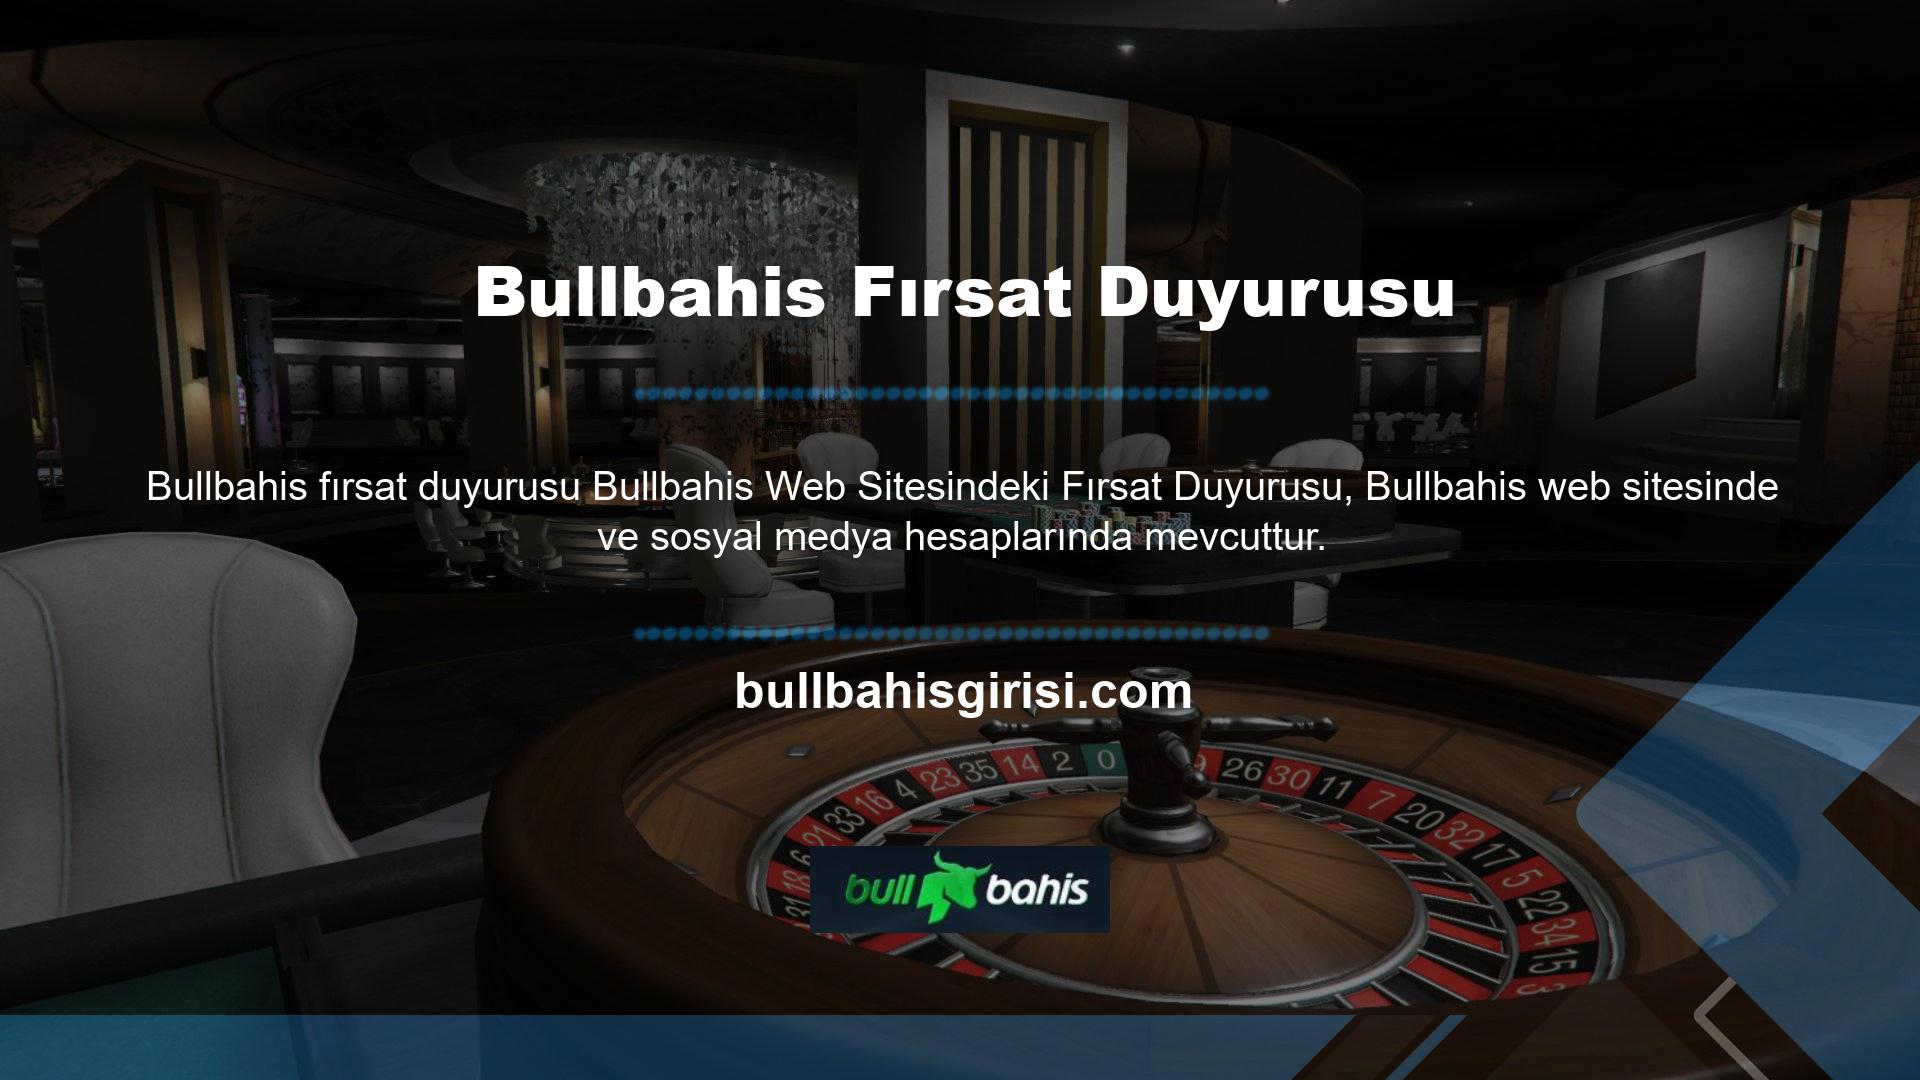 Bullbahis Twitter hesabında güncel site giriş adresini ve etkinliklerle ilgili paylaşımları bulabilirsiniz